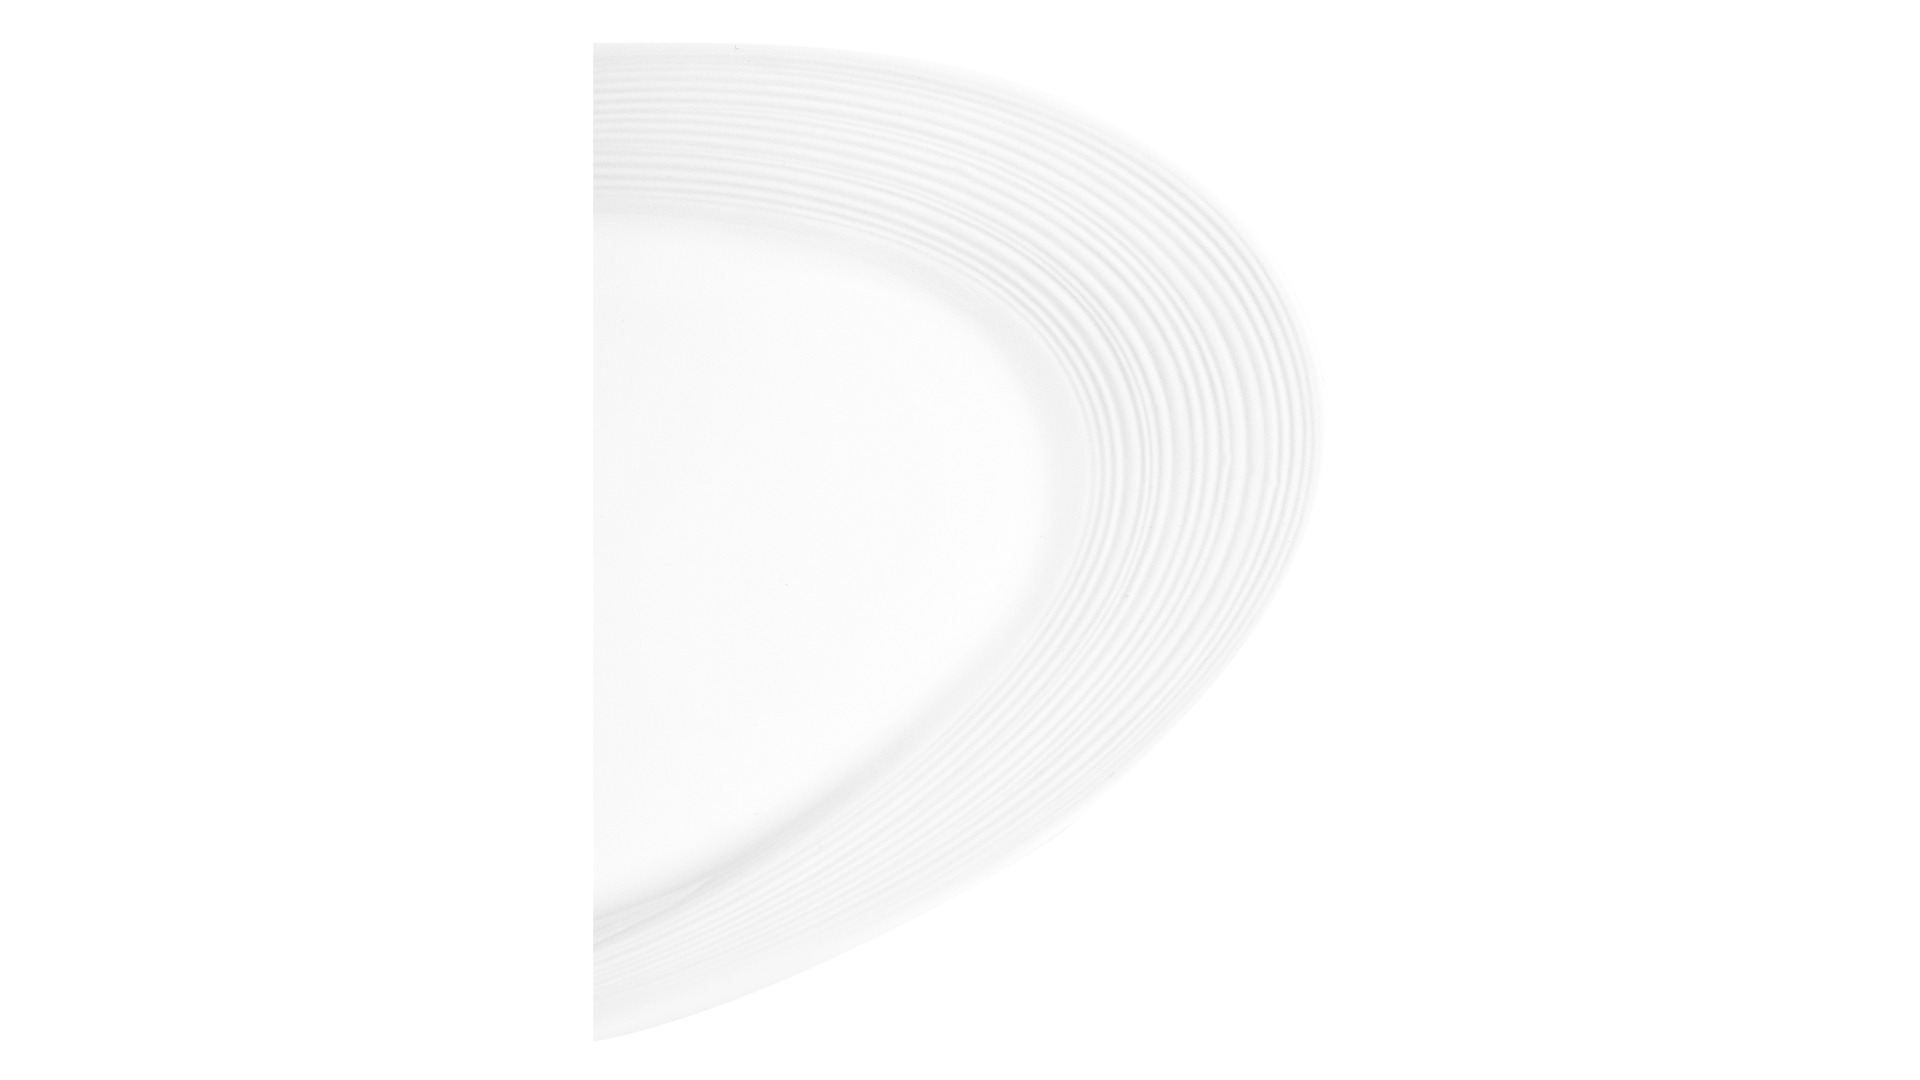 Сервиз столовый Narumi Воздушный белый на 6 персон, 23  предмета, фарфор костяной